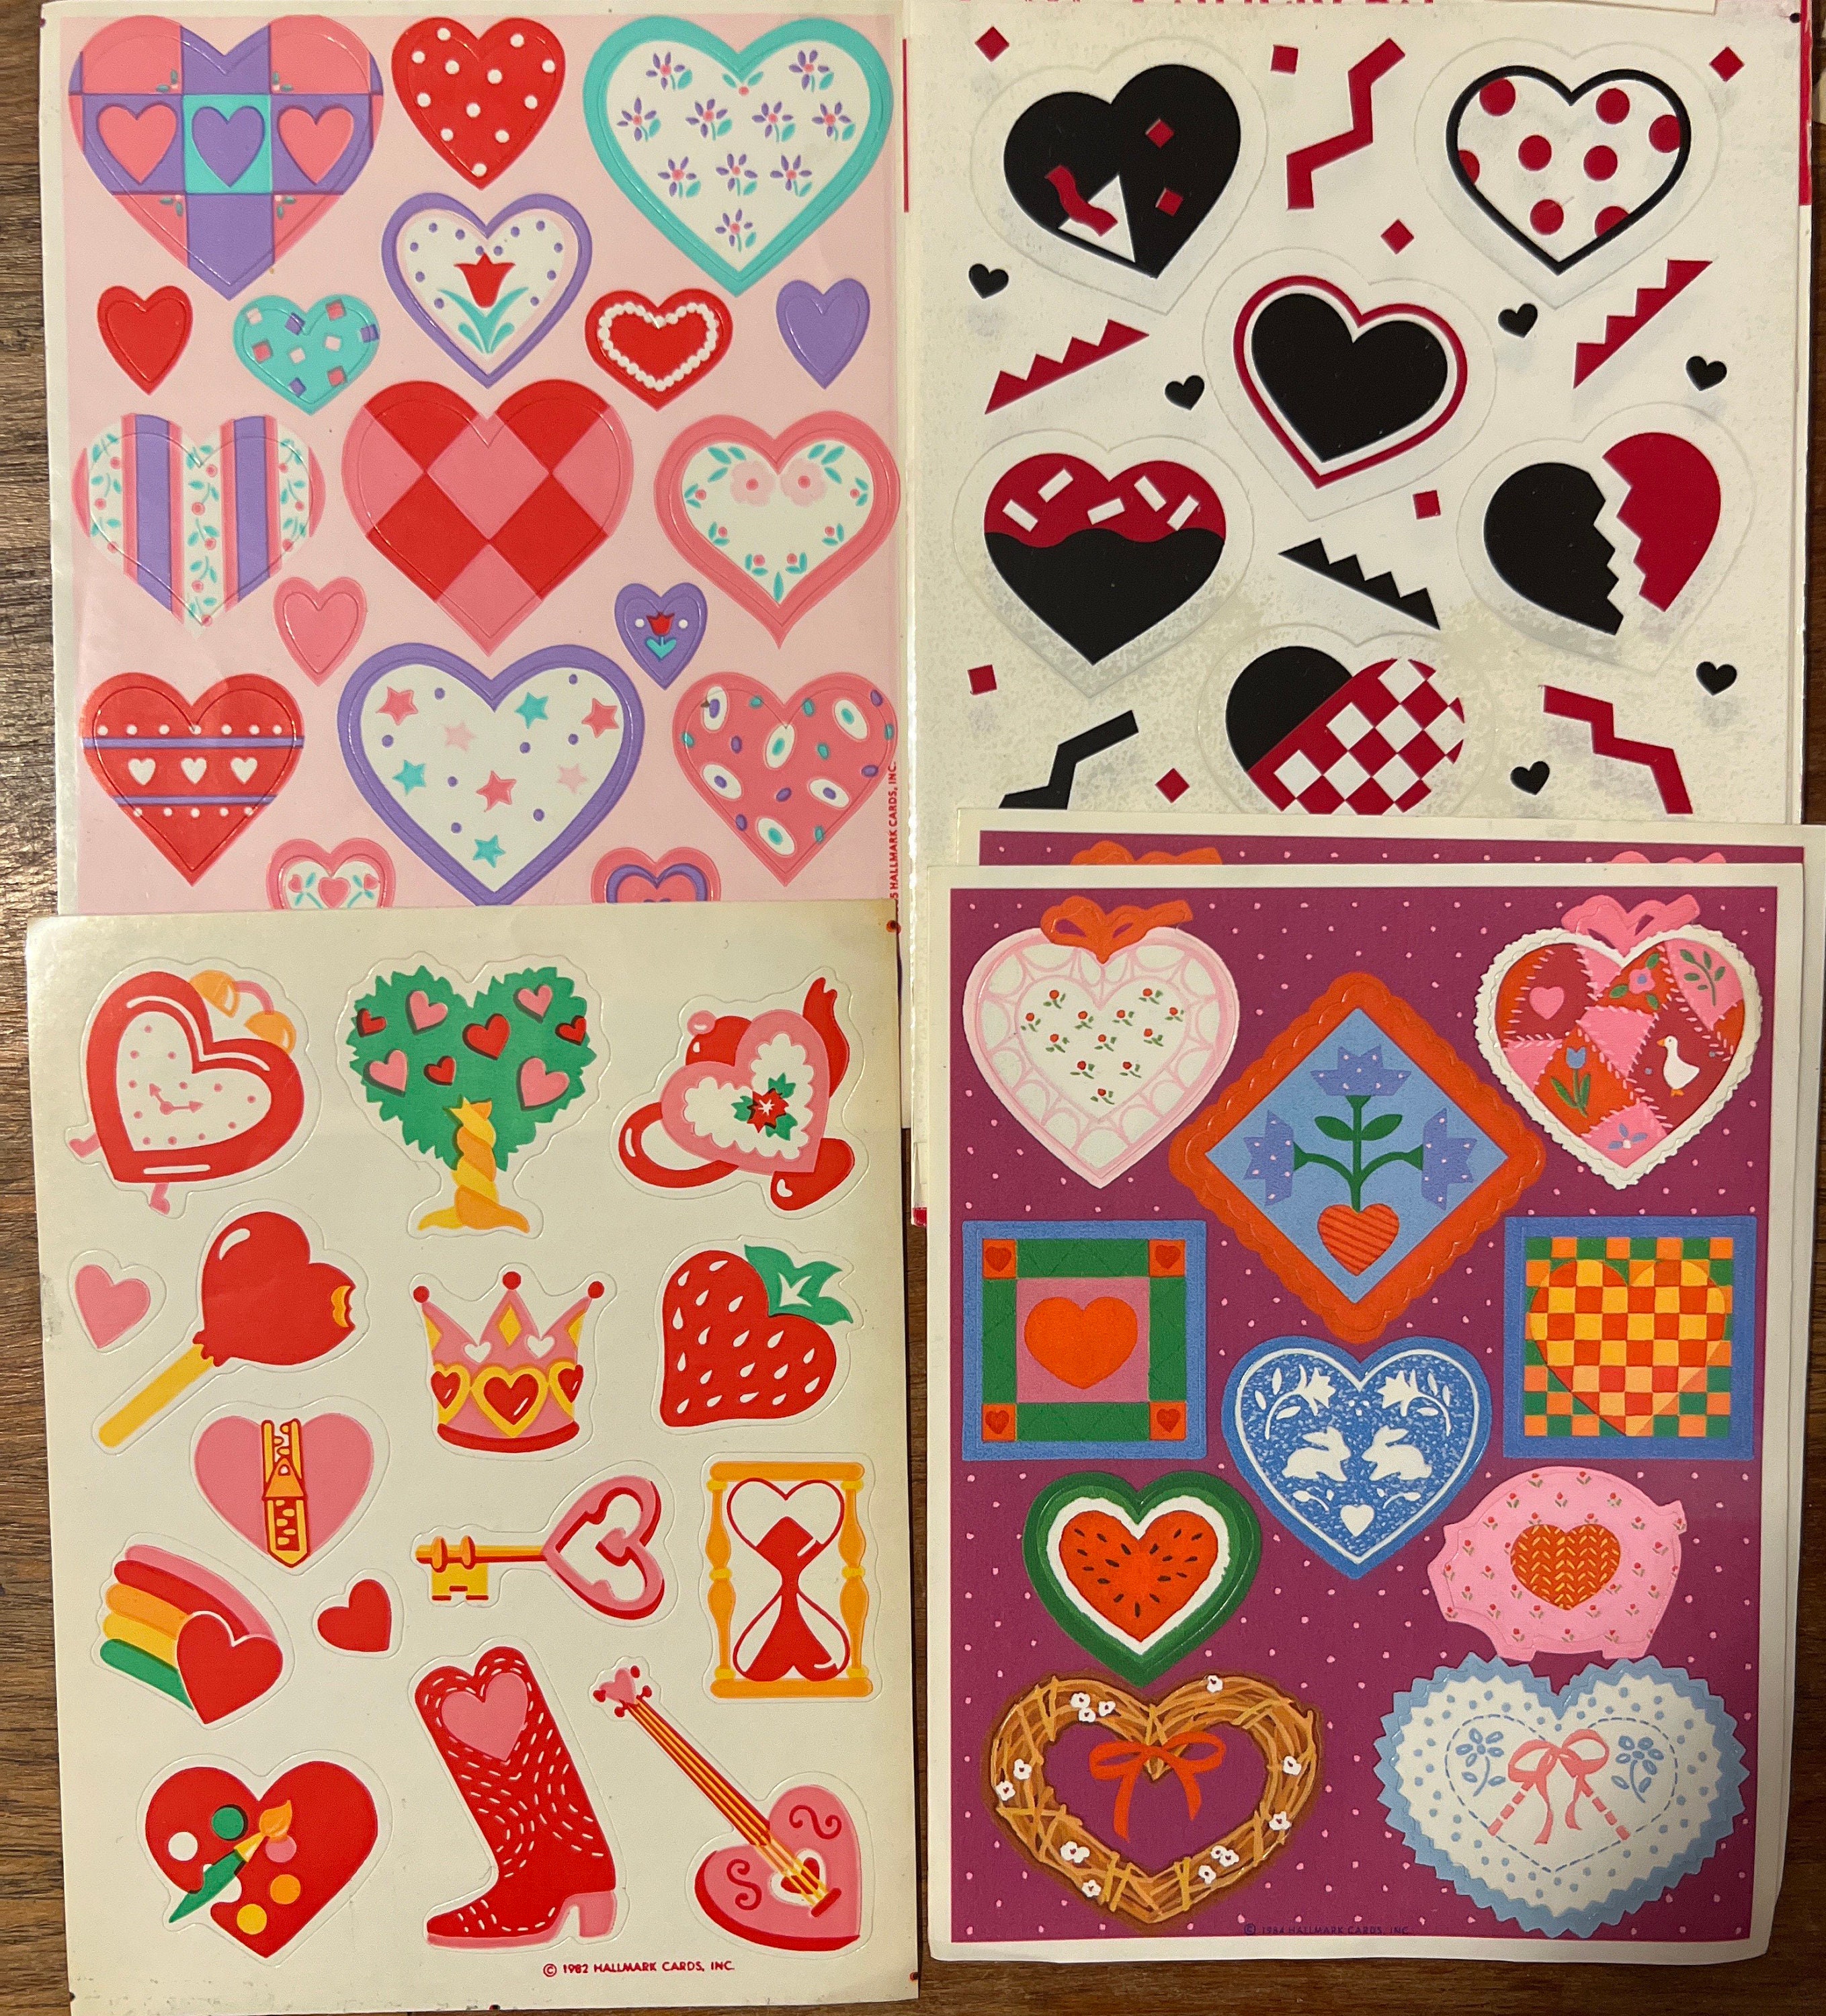 Colección de pegatinas decorativas de amor en estilo de los años 80